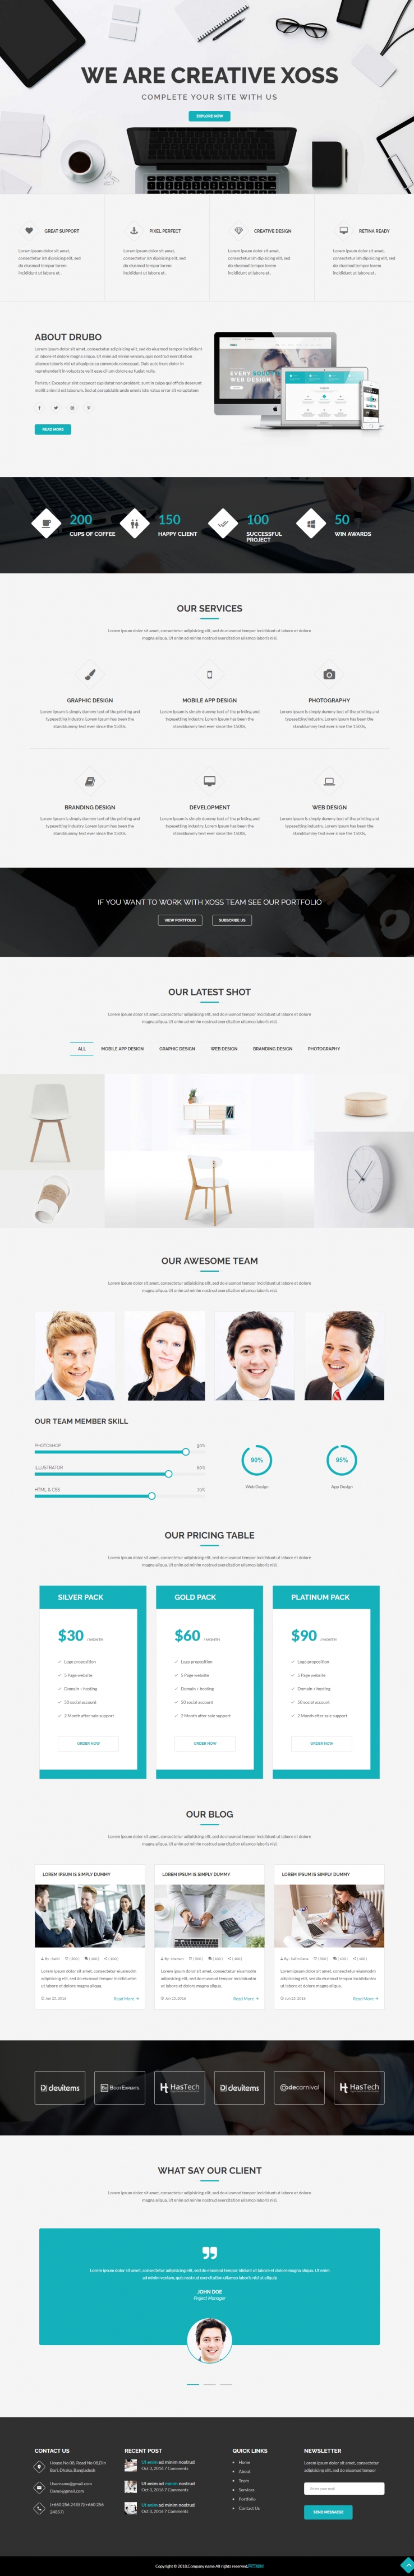 蓝色简洁风格的创意设计公司企业网站源码下载